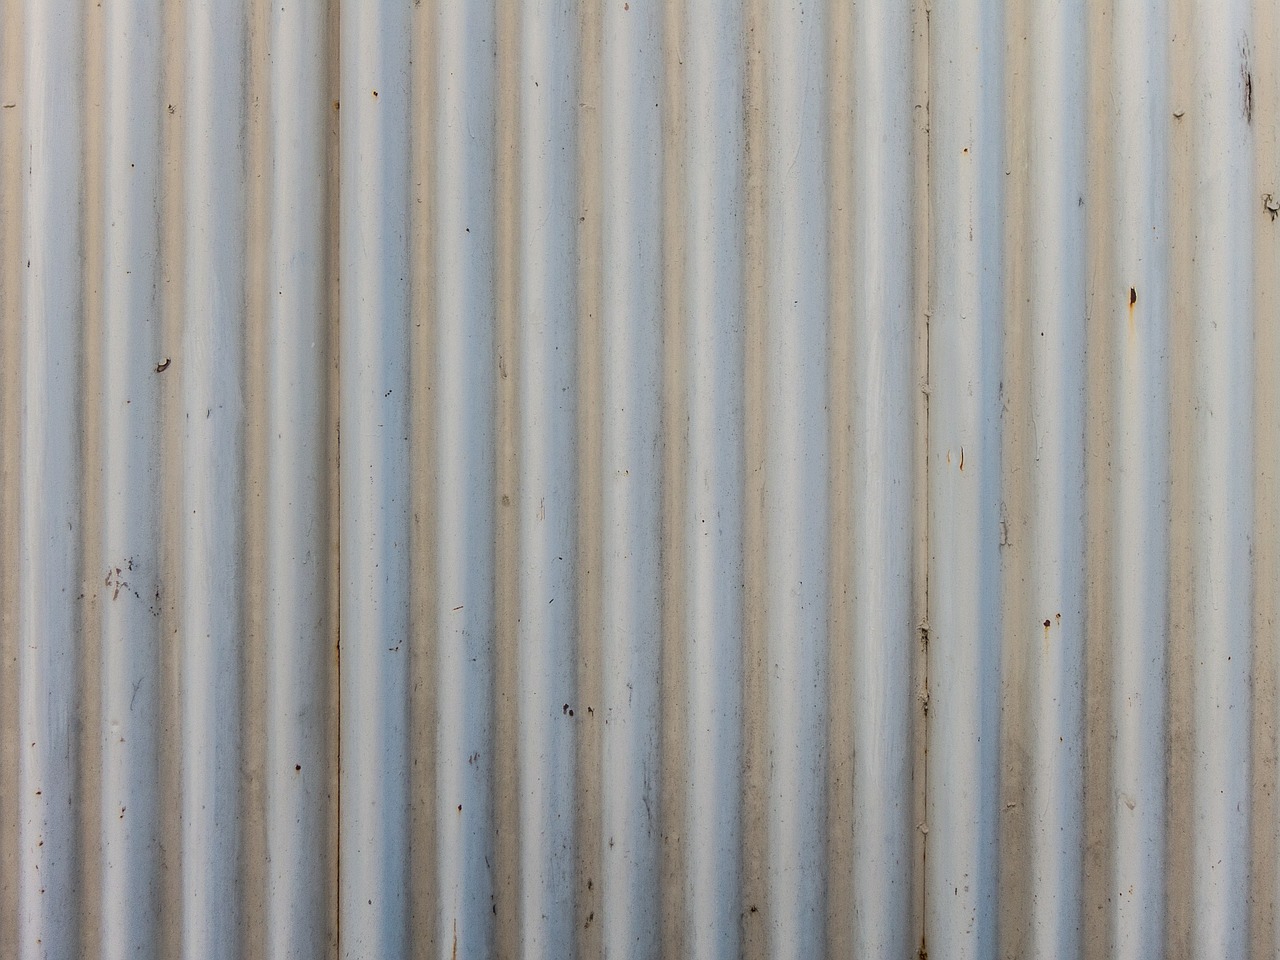 corrugated iron fence free photo